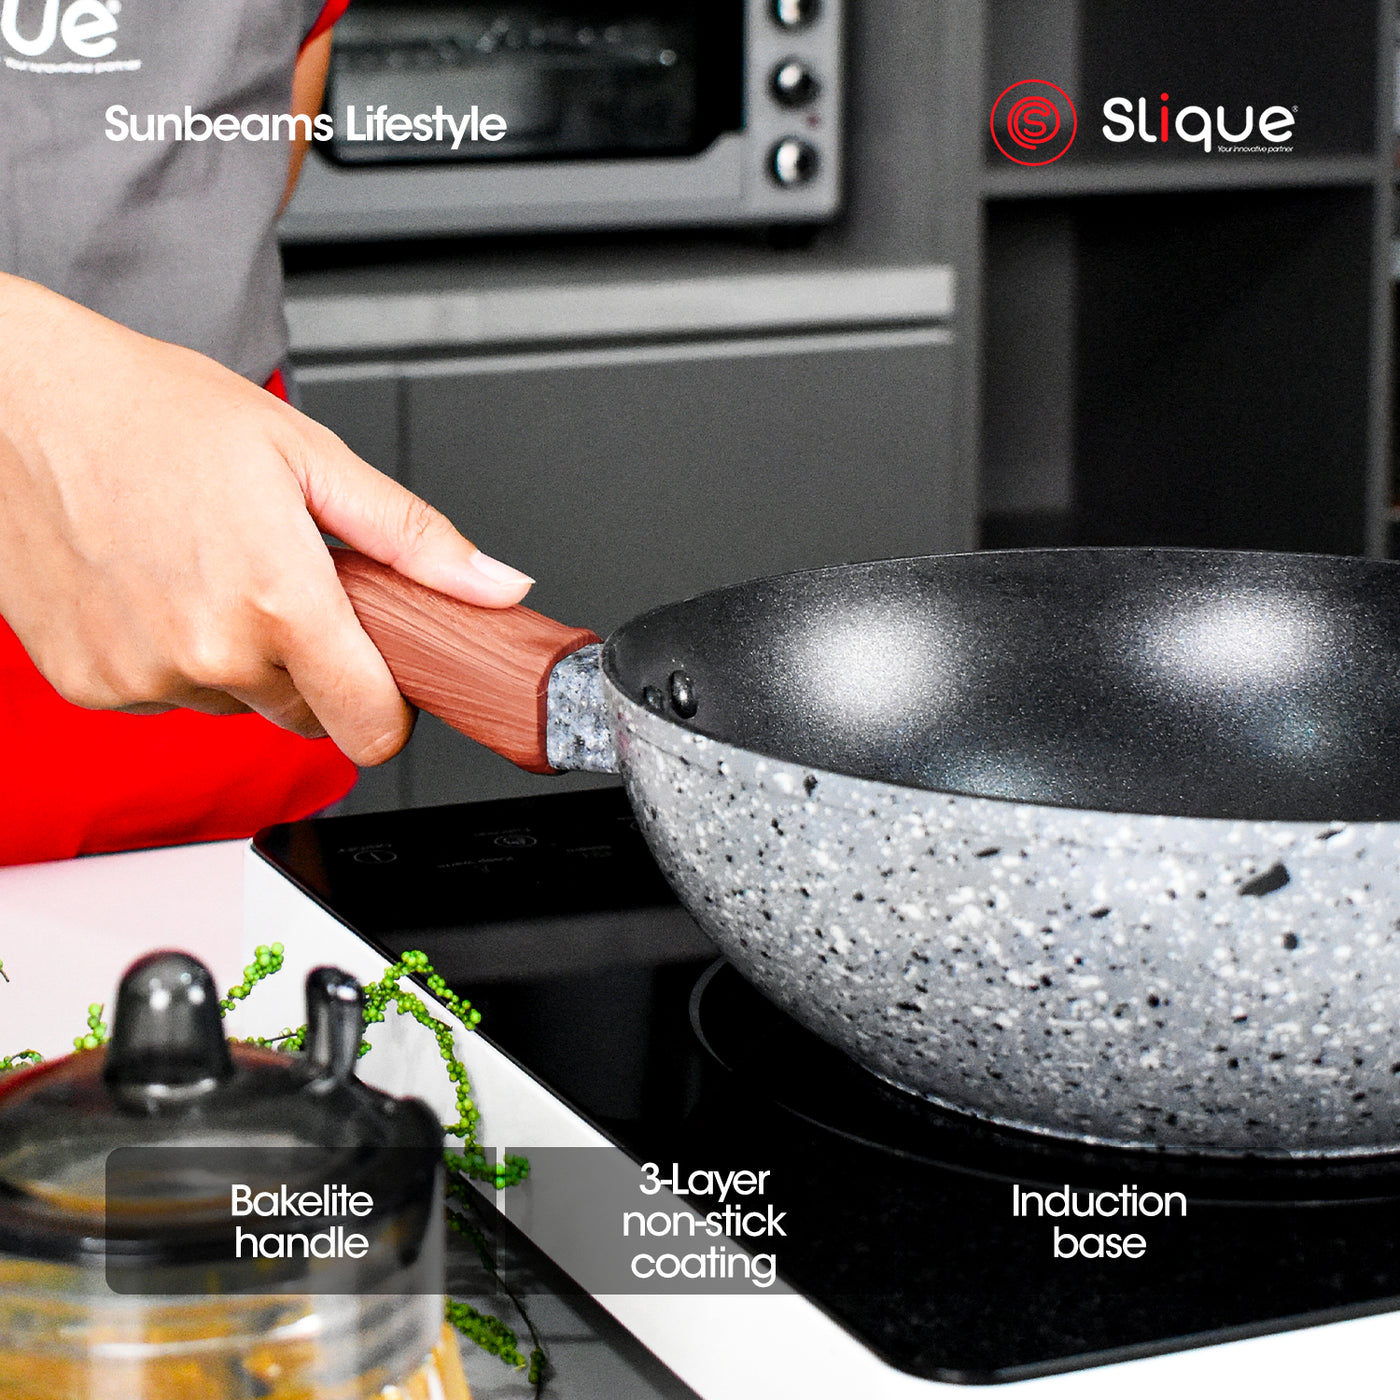 SLIQUE Premium Granite Wok Pan 20/24/28cm